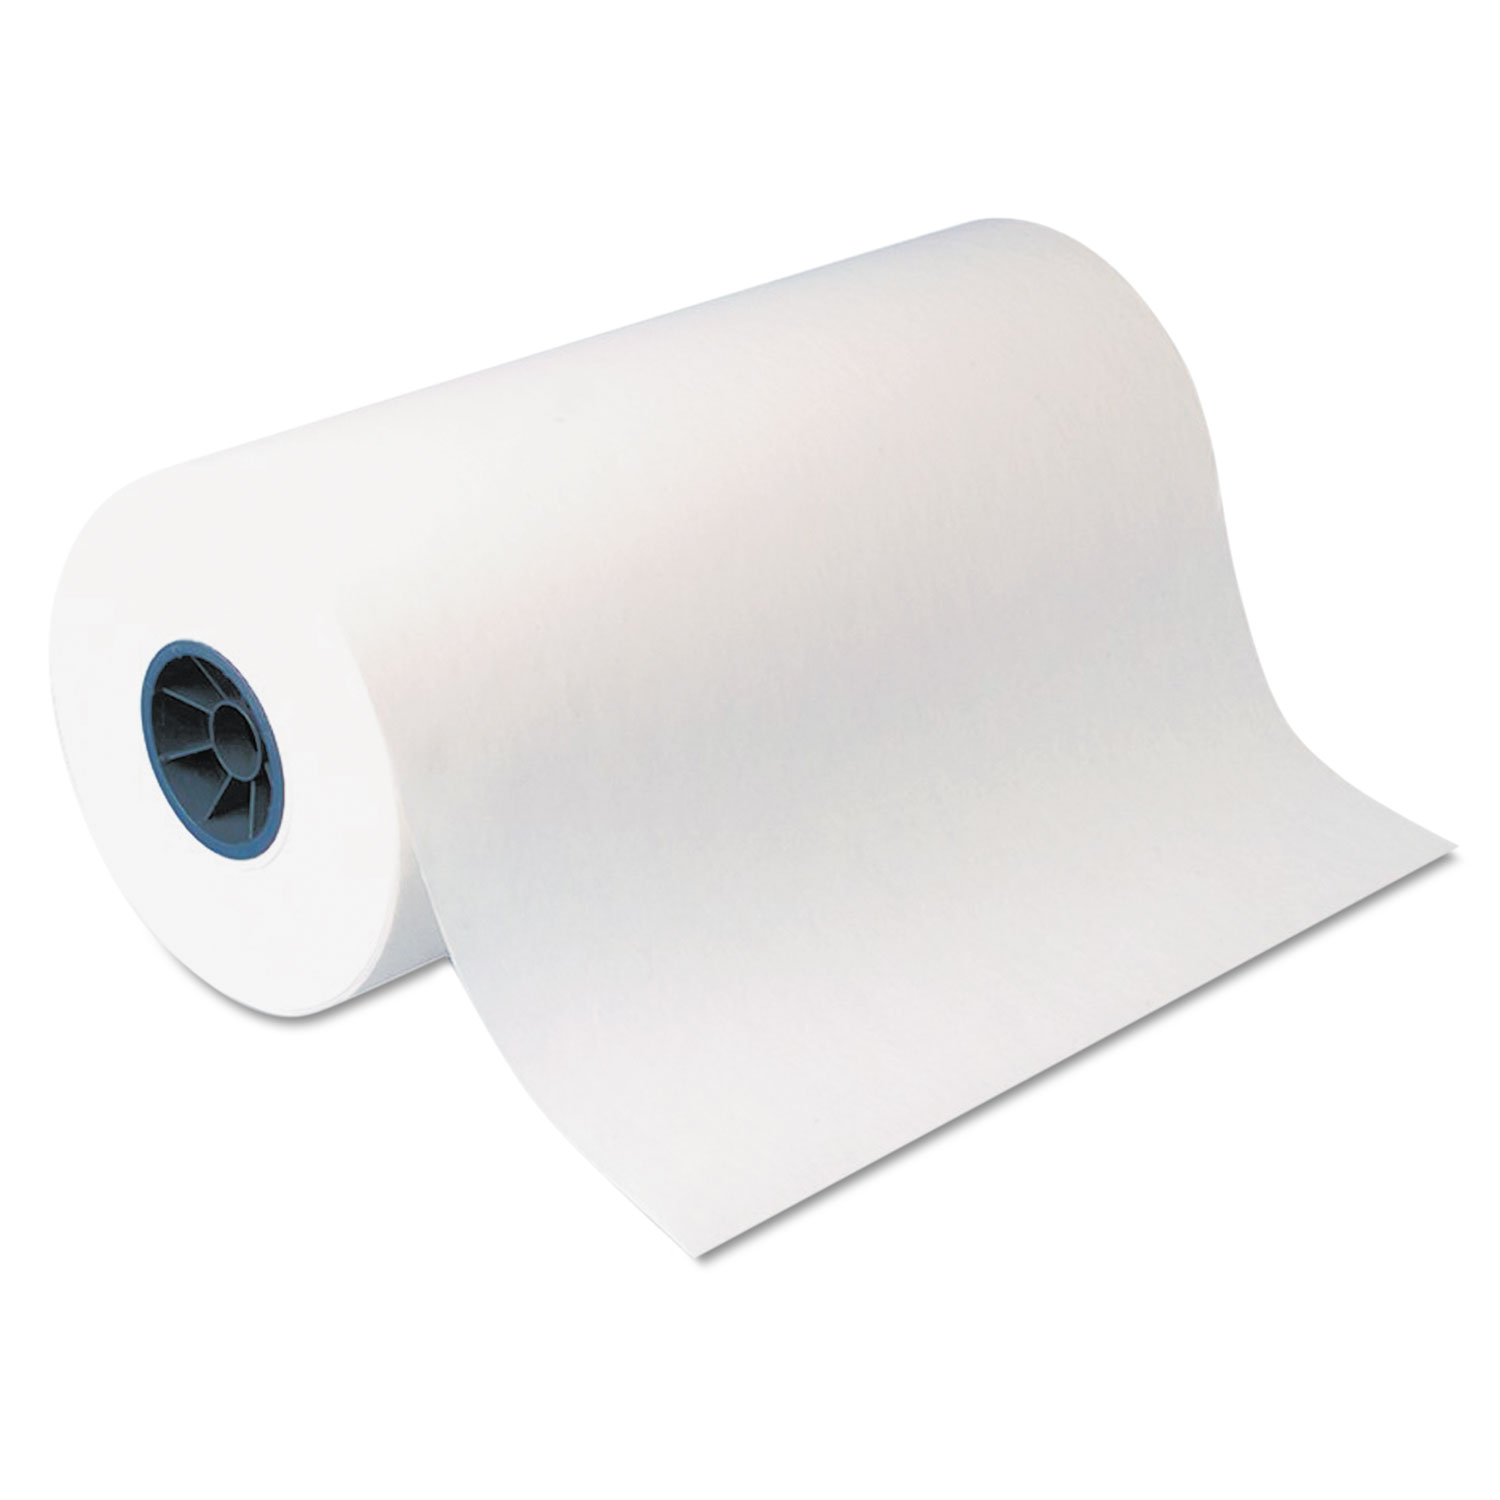  Dixie KL18 Kold-Lok Polyethylene-Coated Freezer Paper Roll, 18 x 1100 ft, White (DXEKL18) 